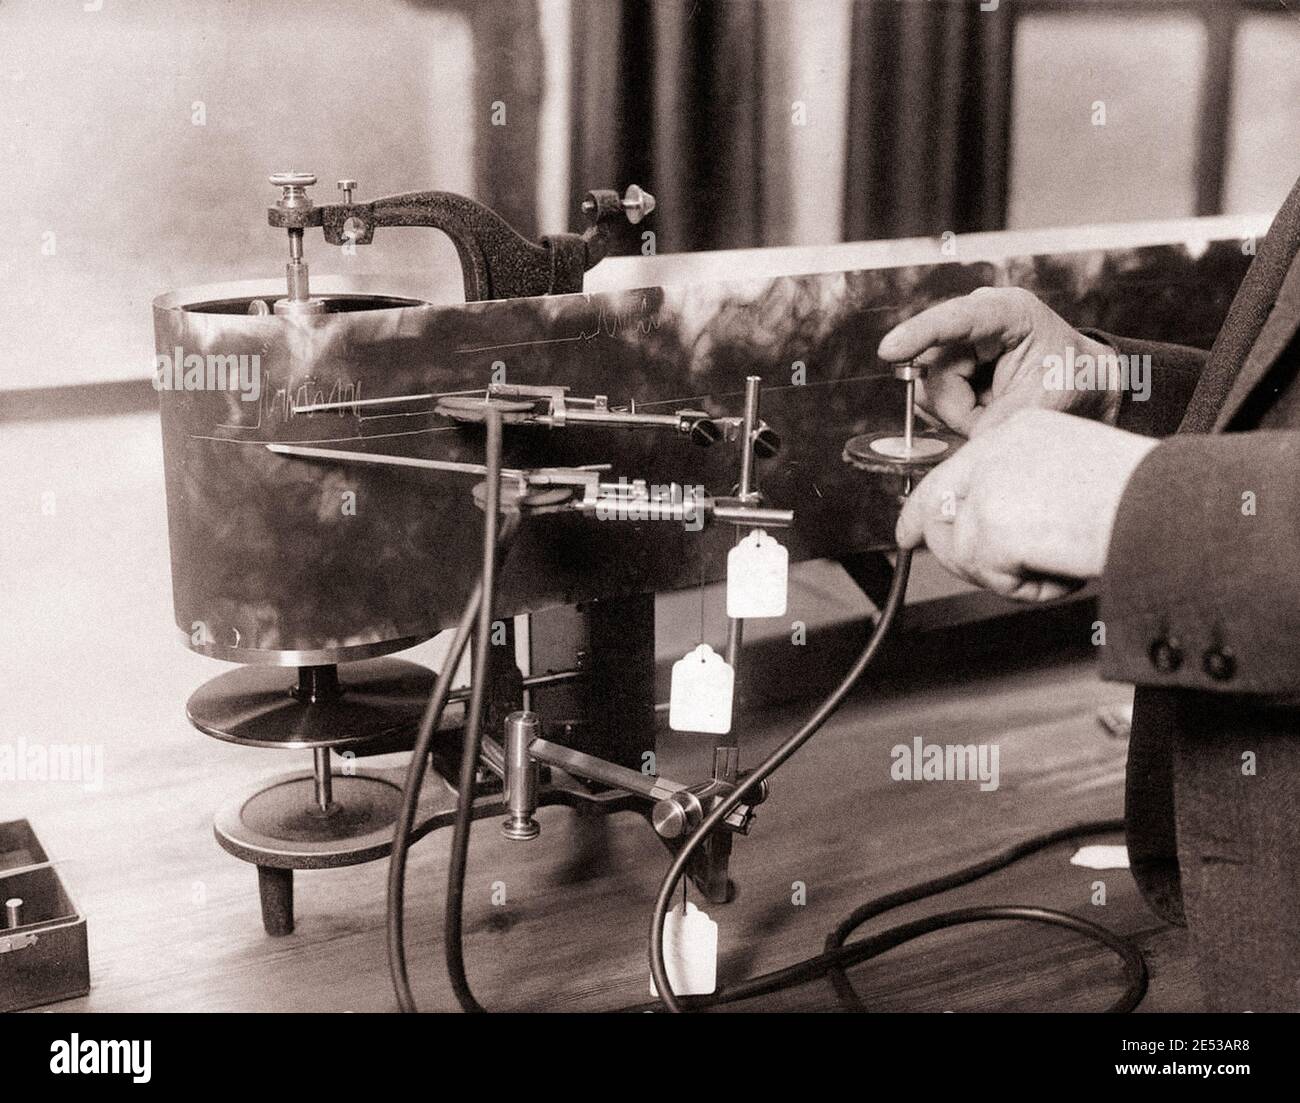 Un dispositivo que comprueba la resistencia de los músculos del brazo y el grado de nerviosismo del candidato. Alemania, Leipzig, 1926. Foto de stock